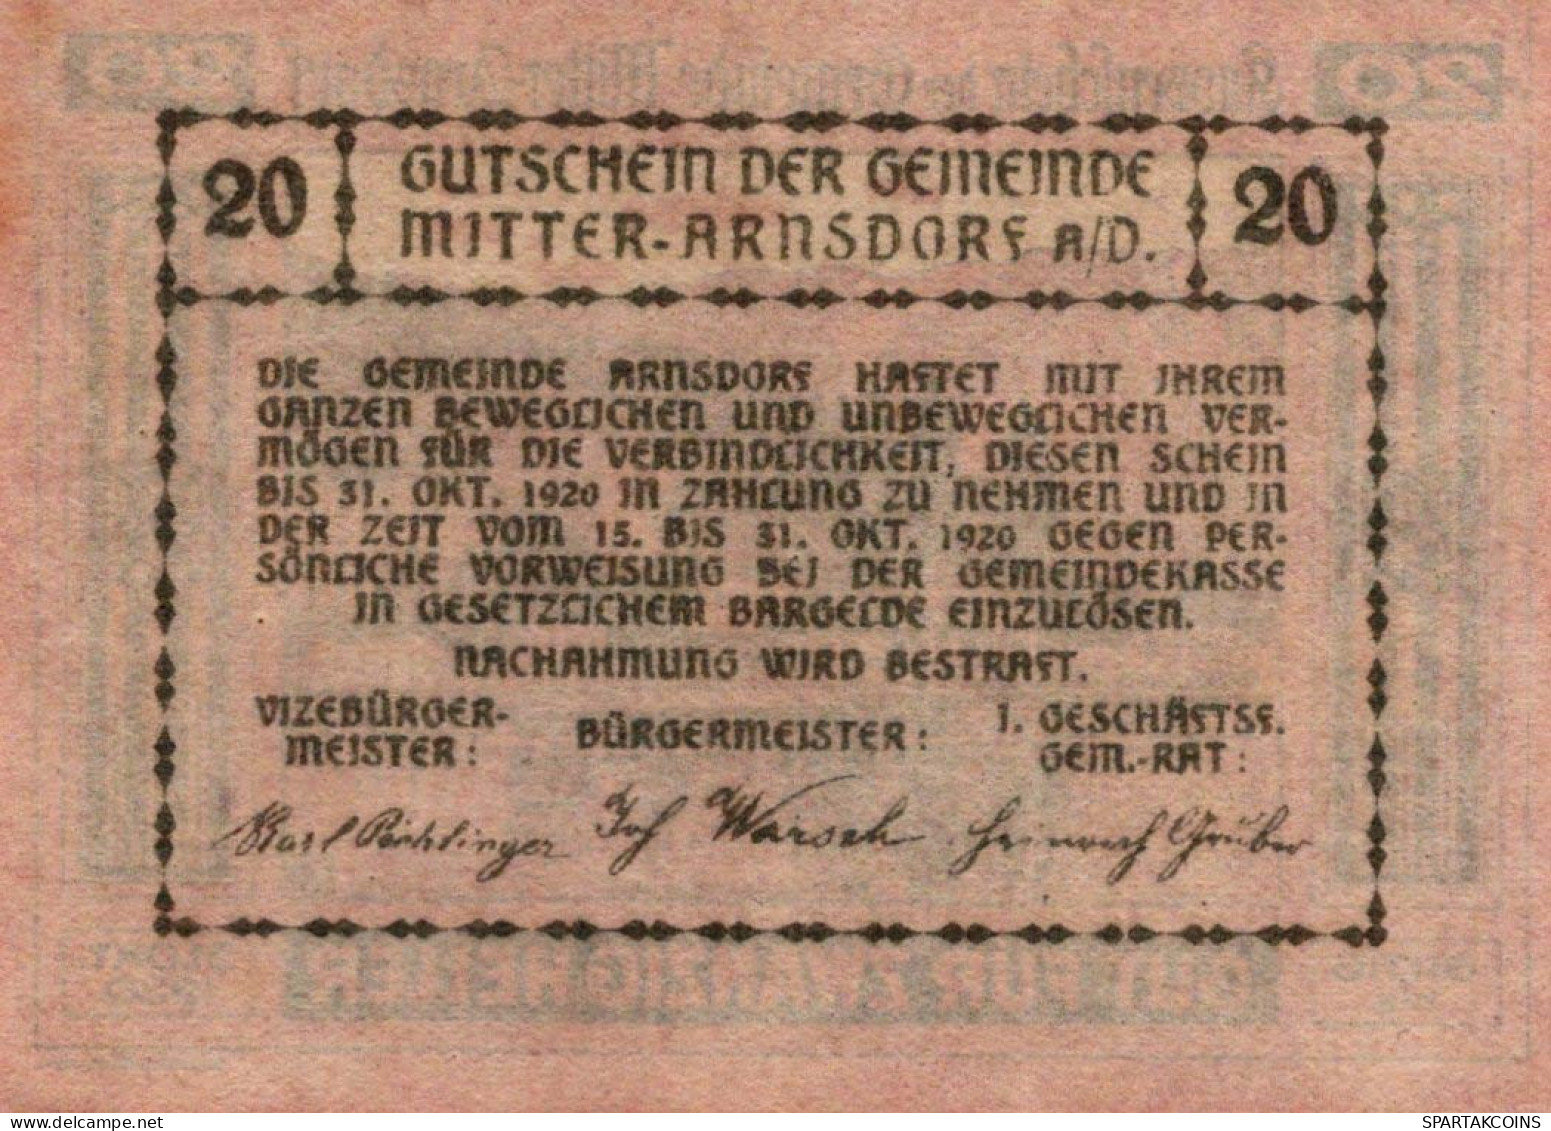 20 HELLER 1920 Stadt MITTER-ARNSDORF Niedrigeren Österreich Notgeld Papiergeld Banknote #PG953 - [11] Local Banknote Issues